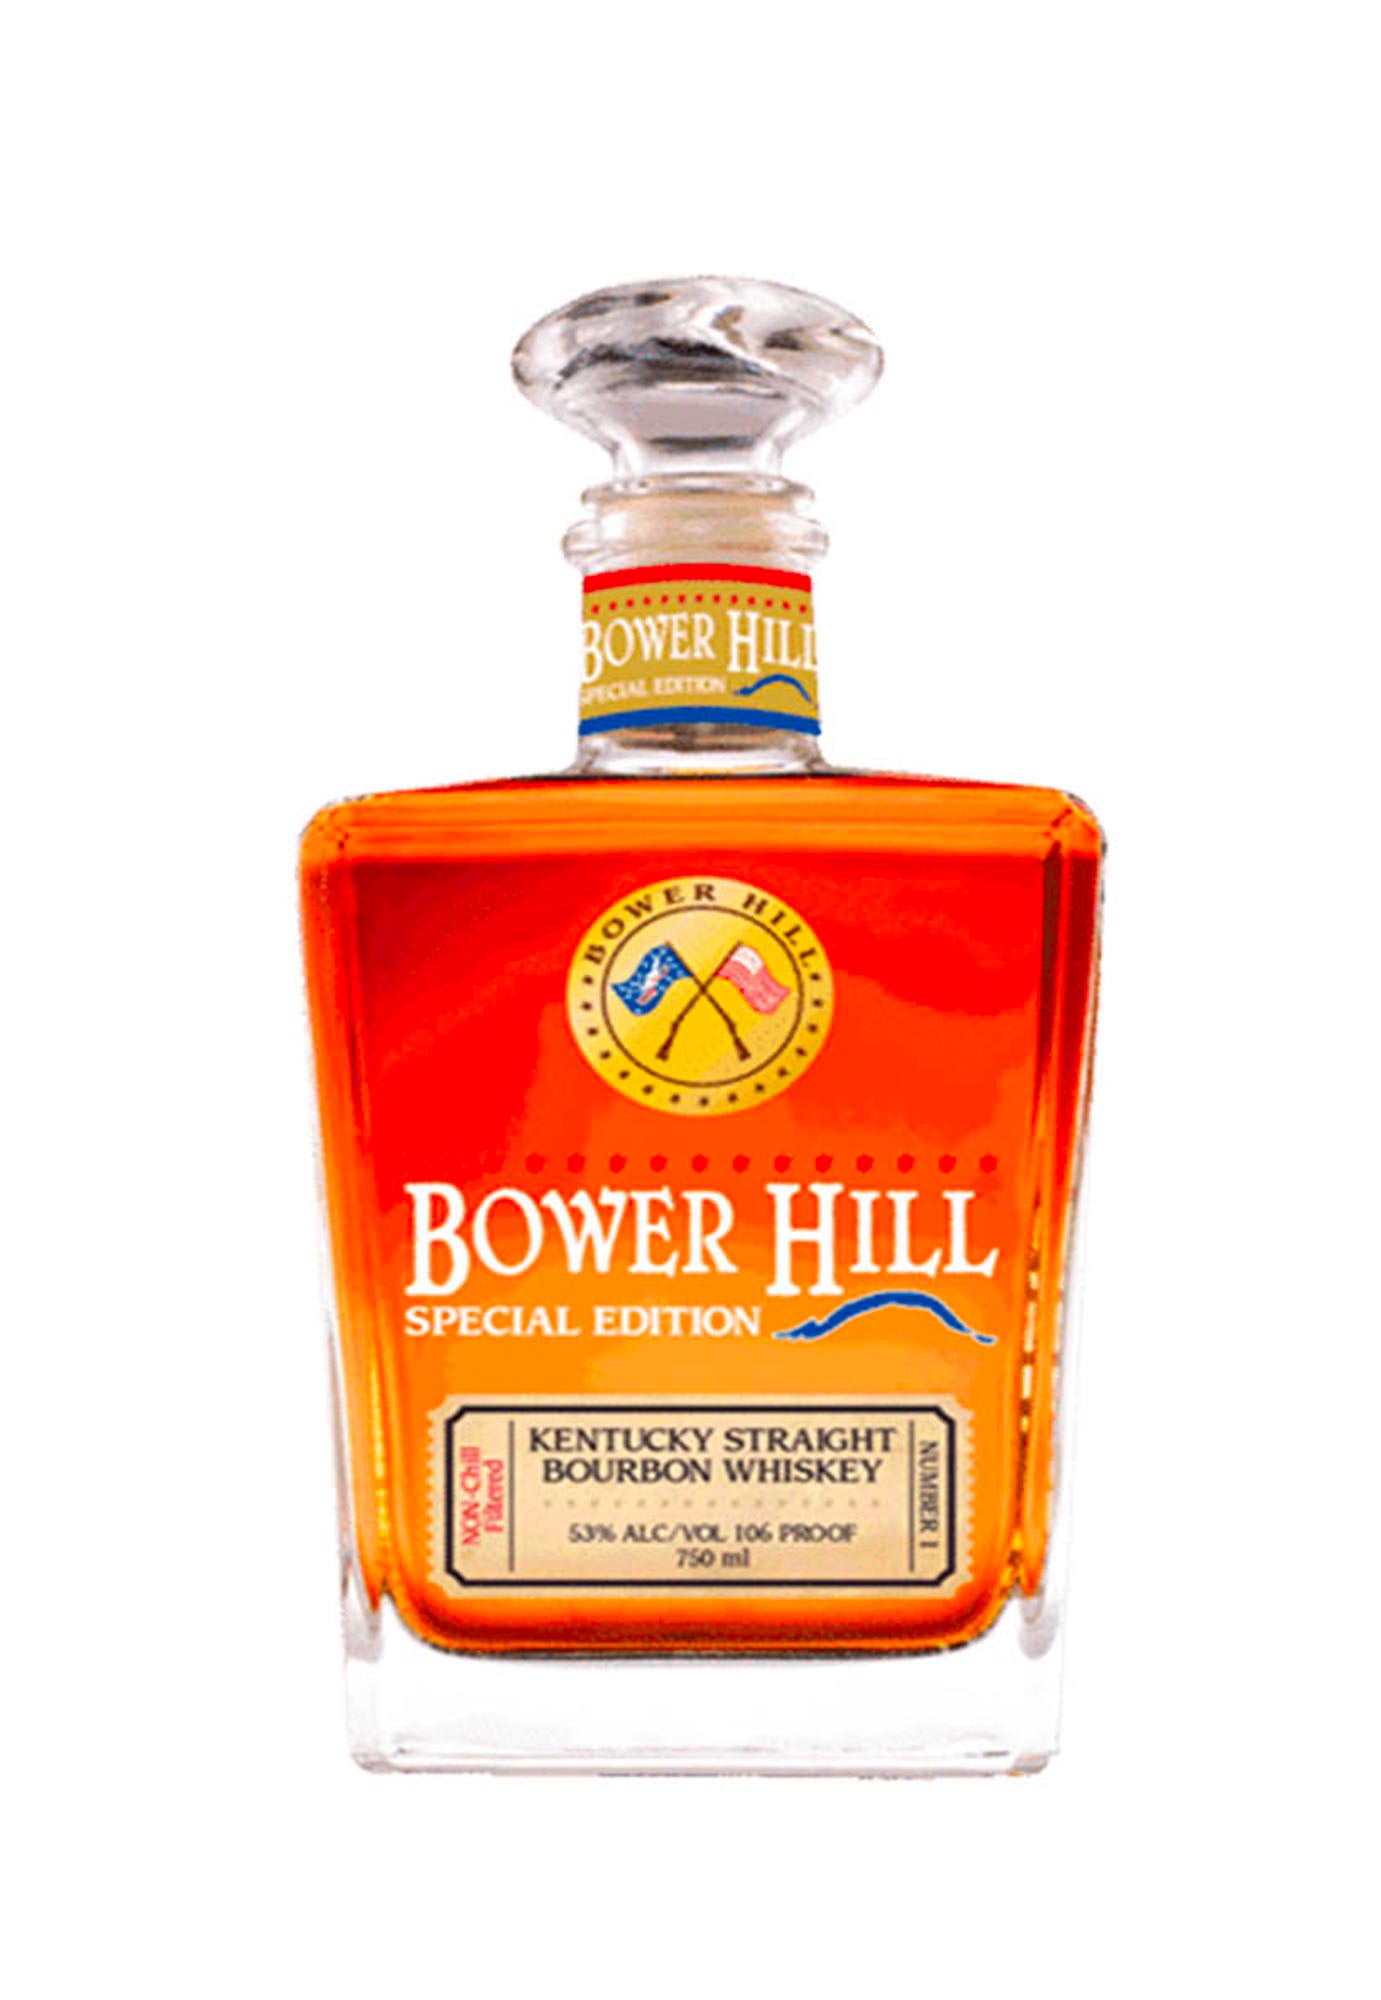 Bower Hill Bourbon Kentucky Straight